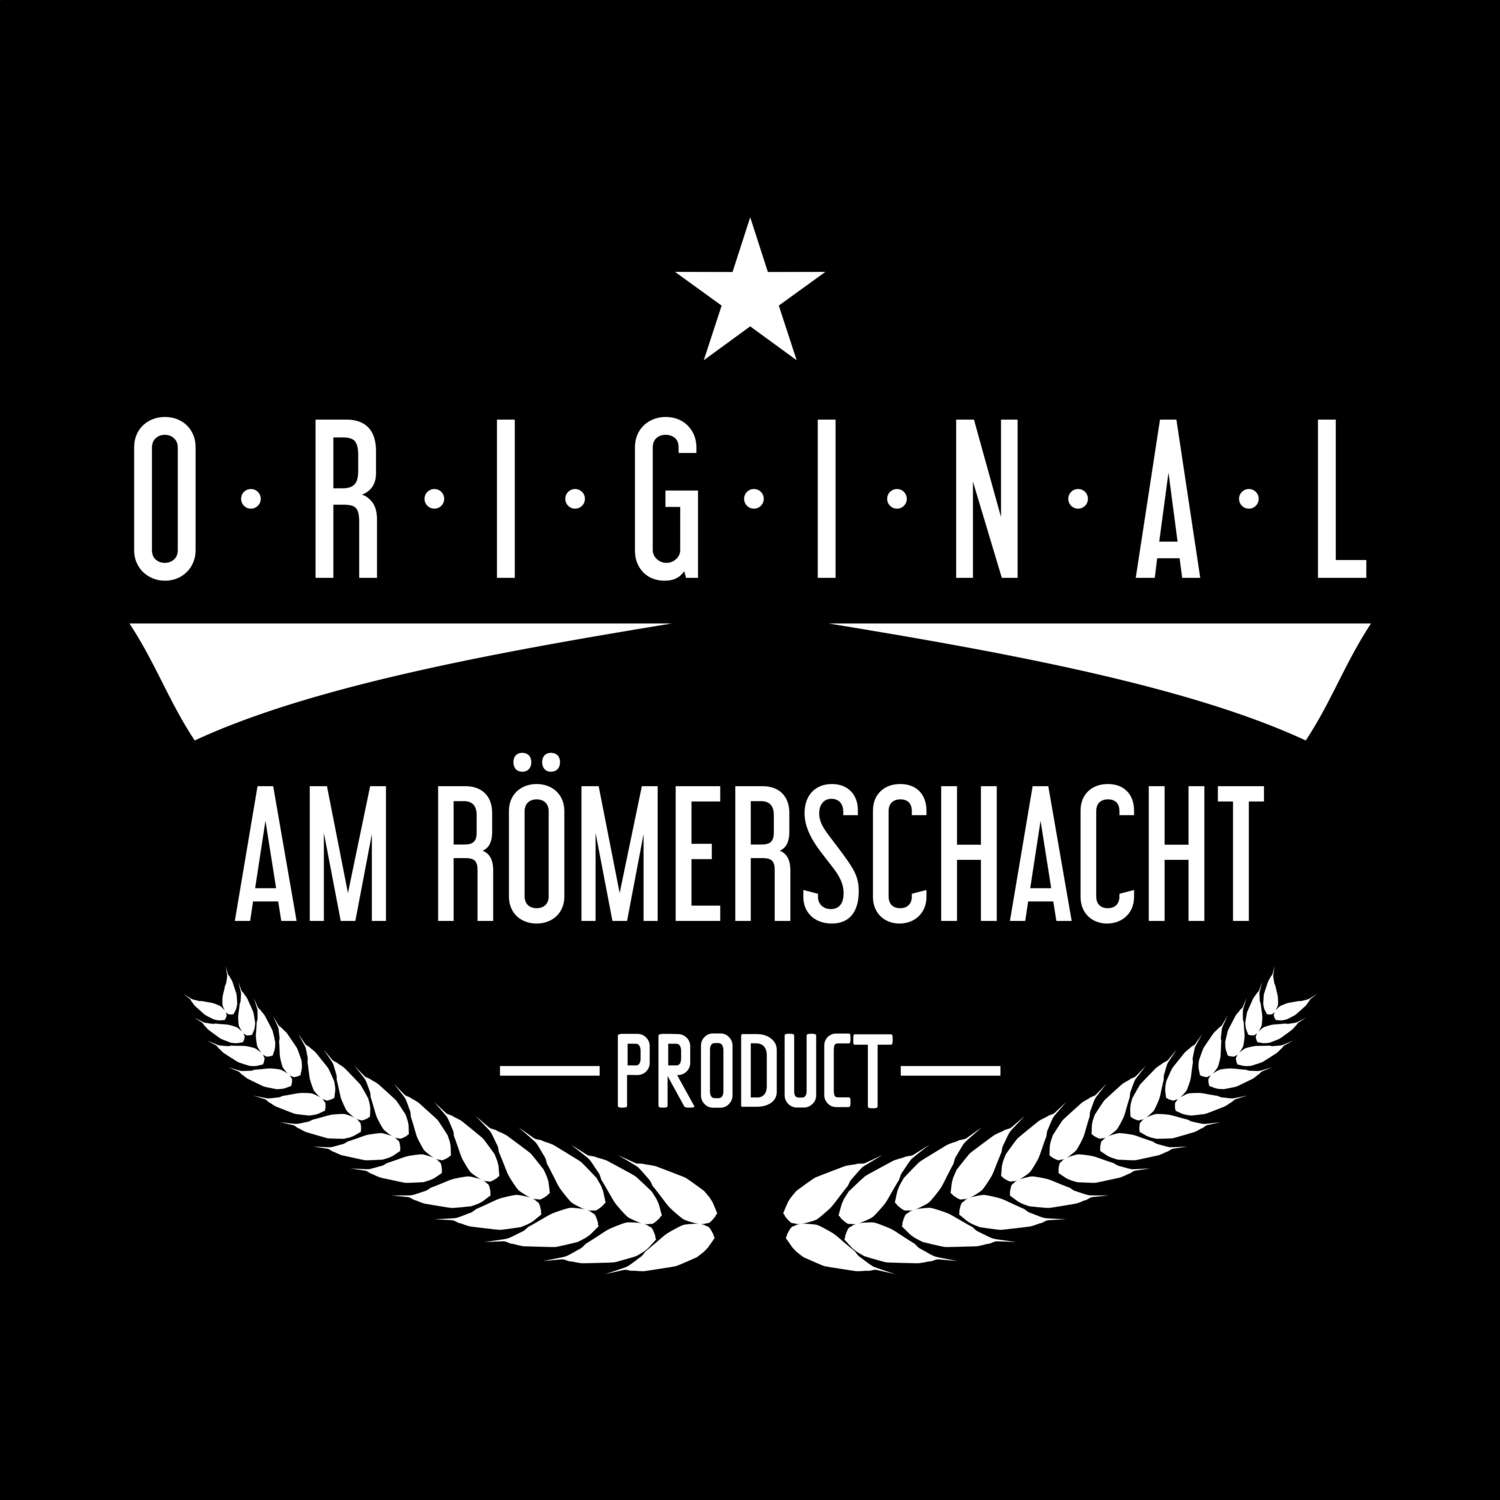 Am Römerschacht T-Shirt »Original Product«